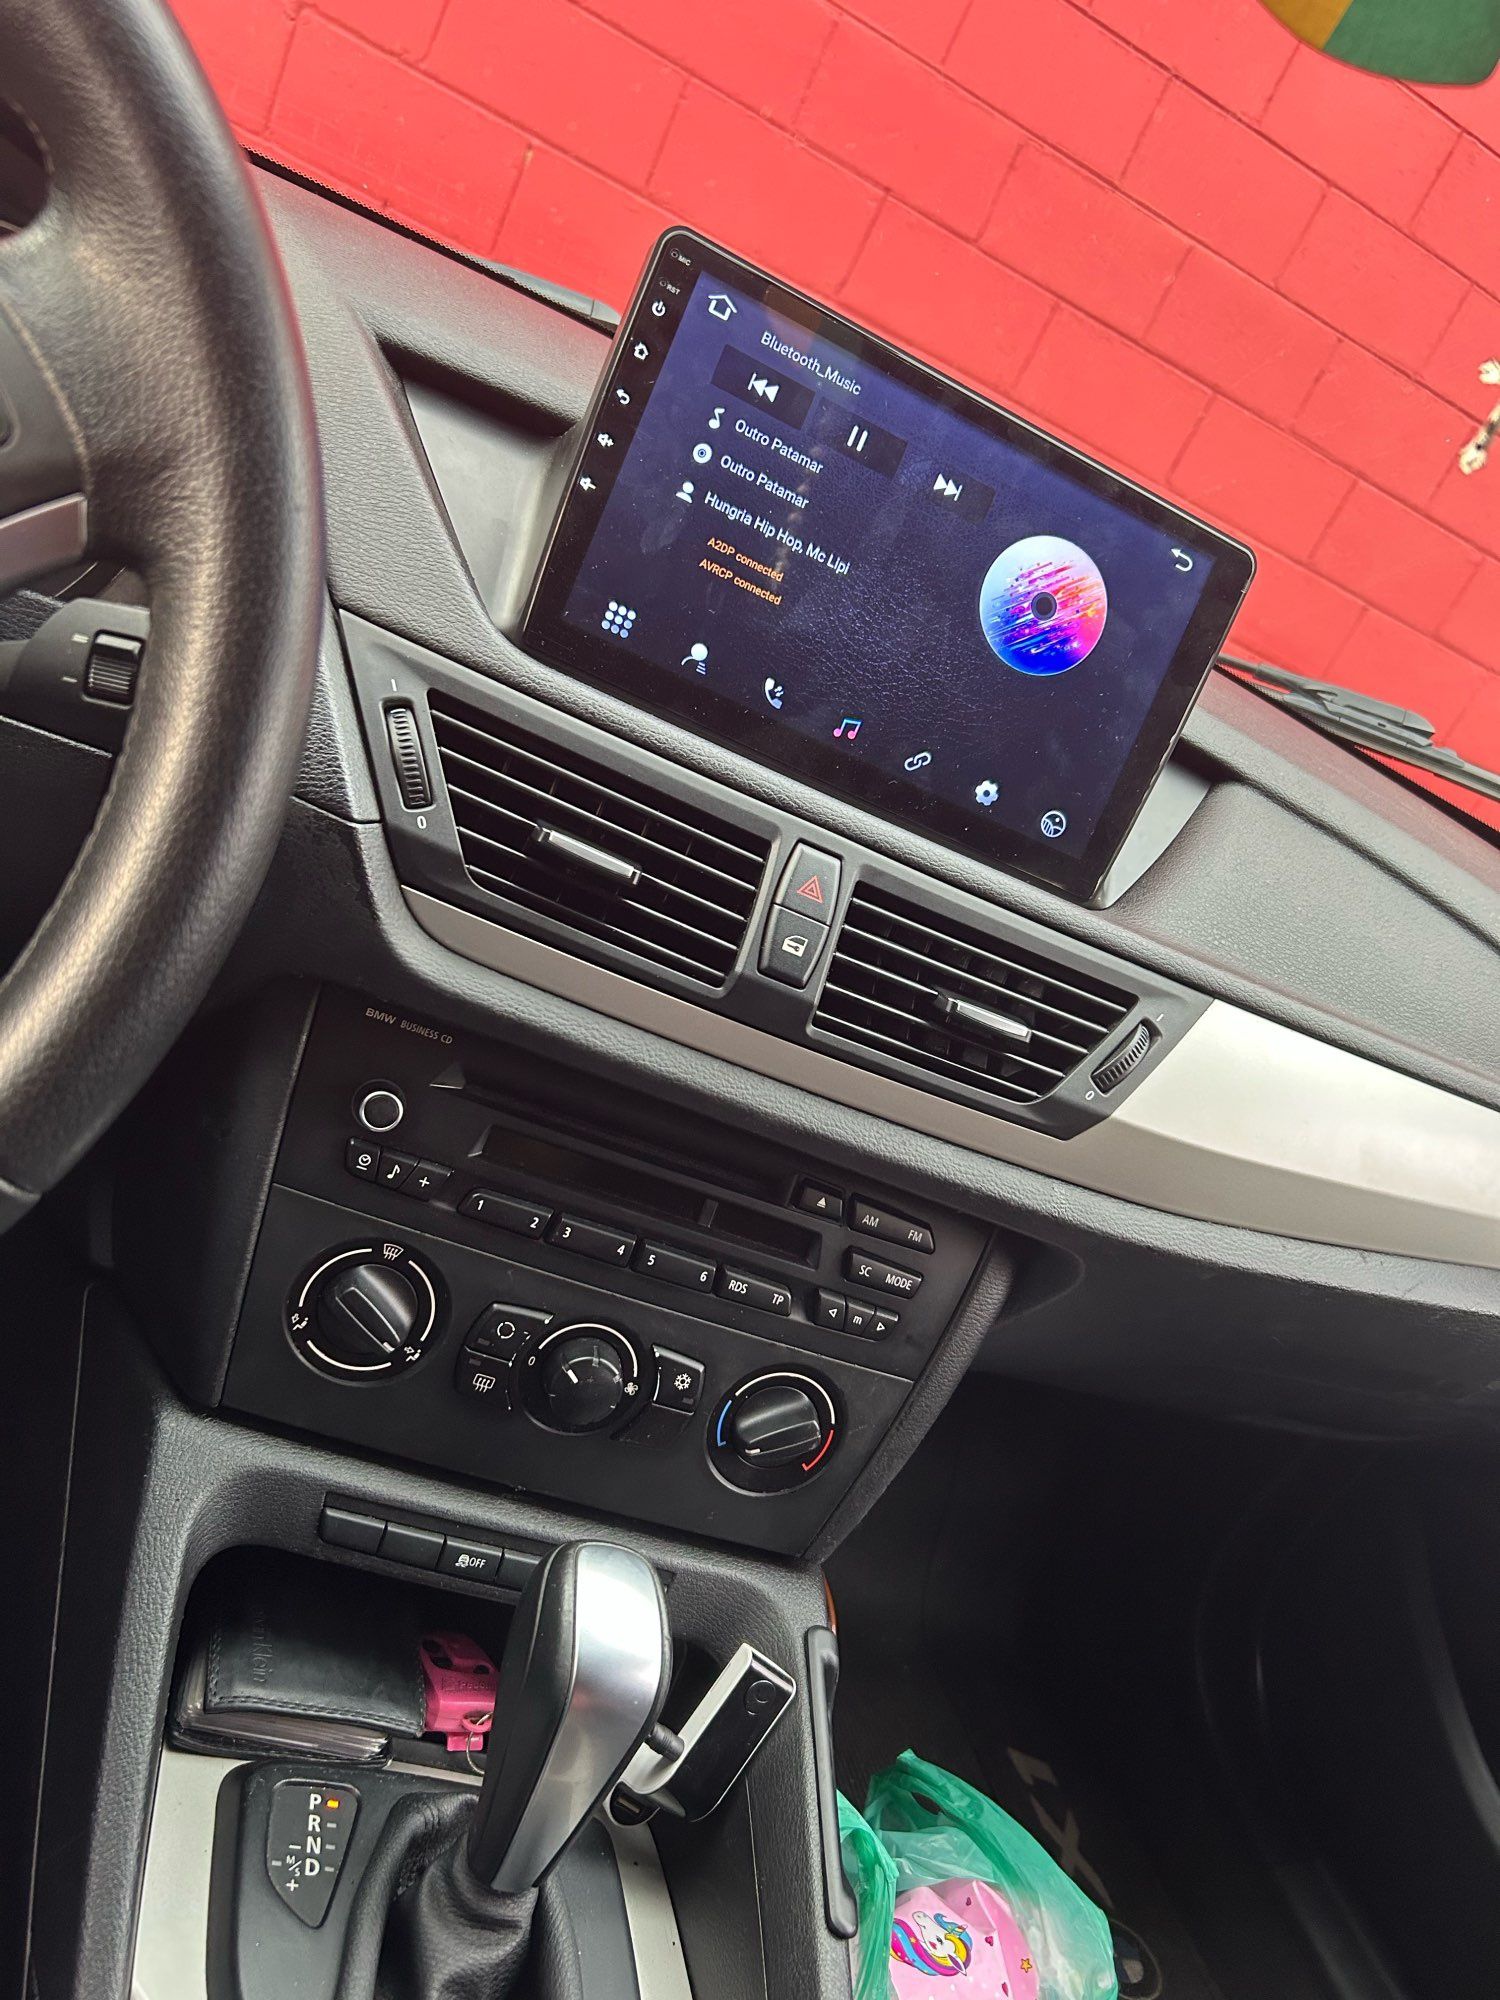 Radio nawigacja BMW X1 E84 Android GPS Navi